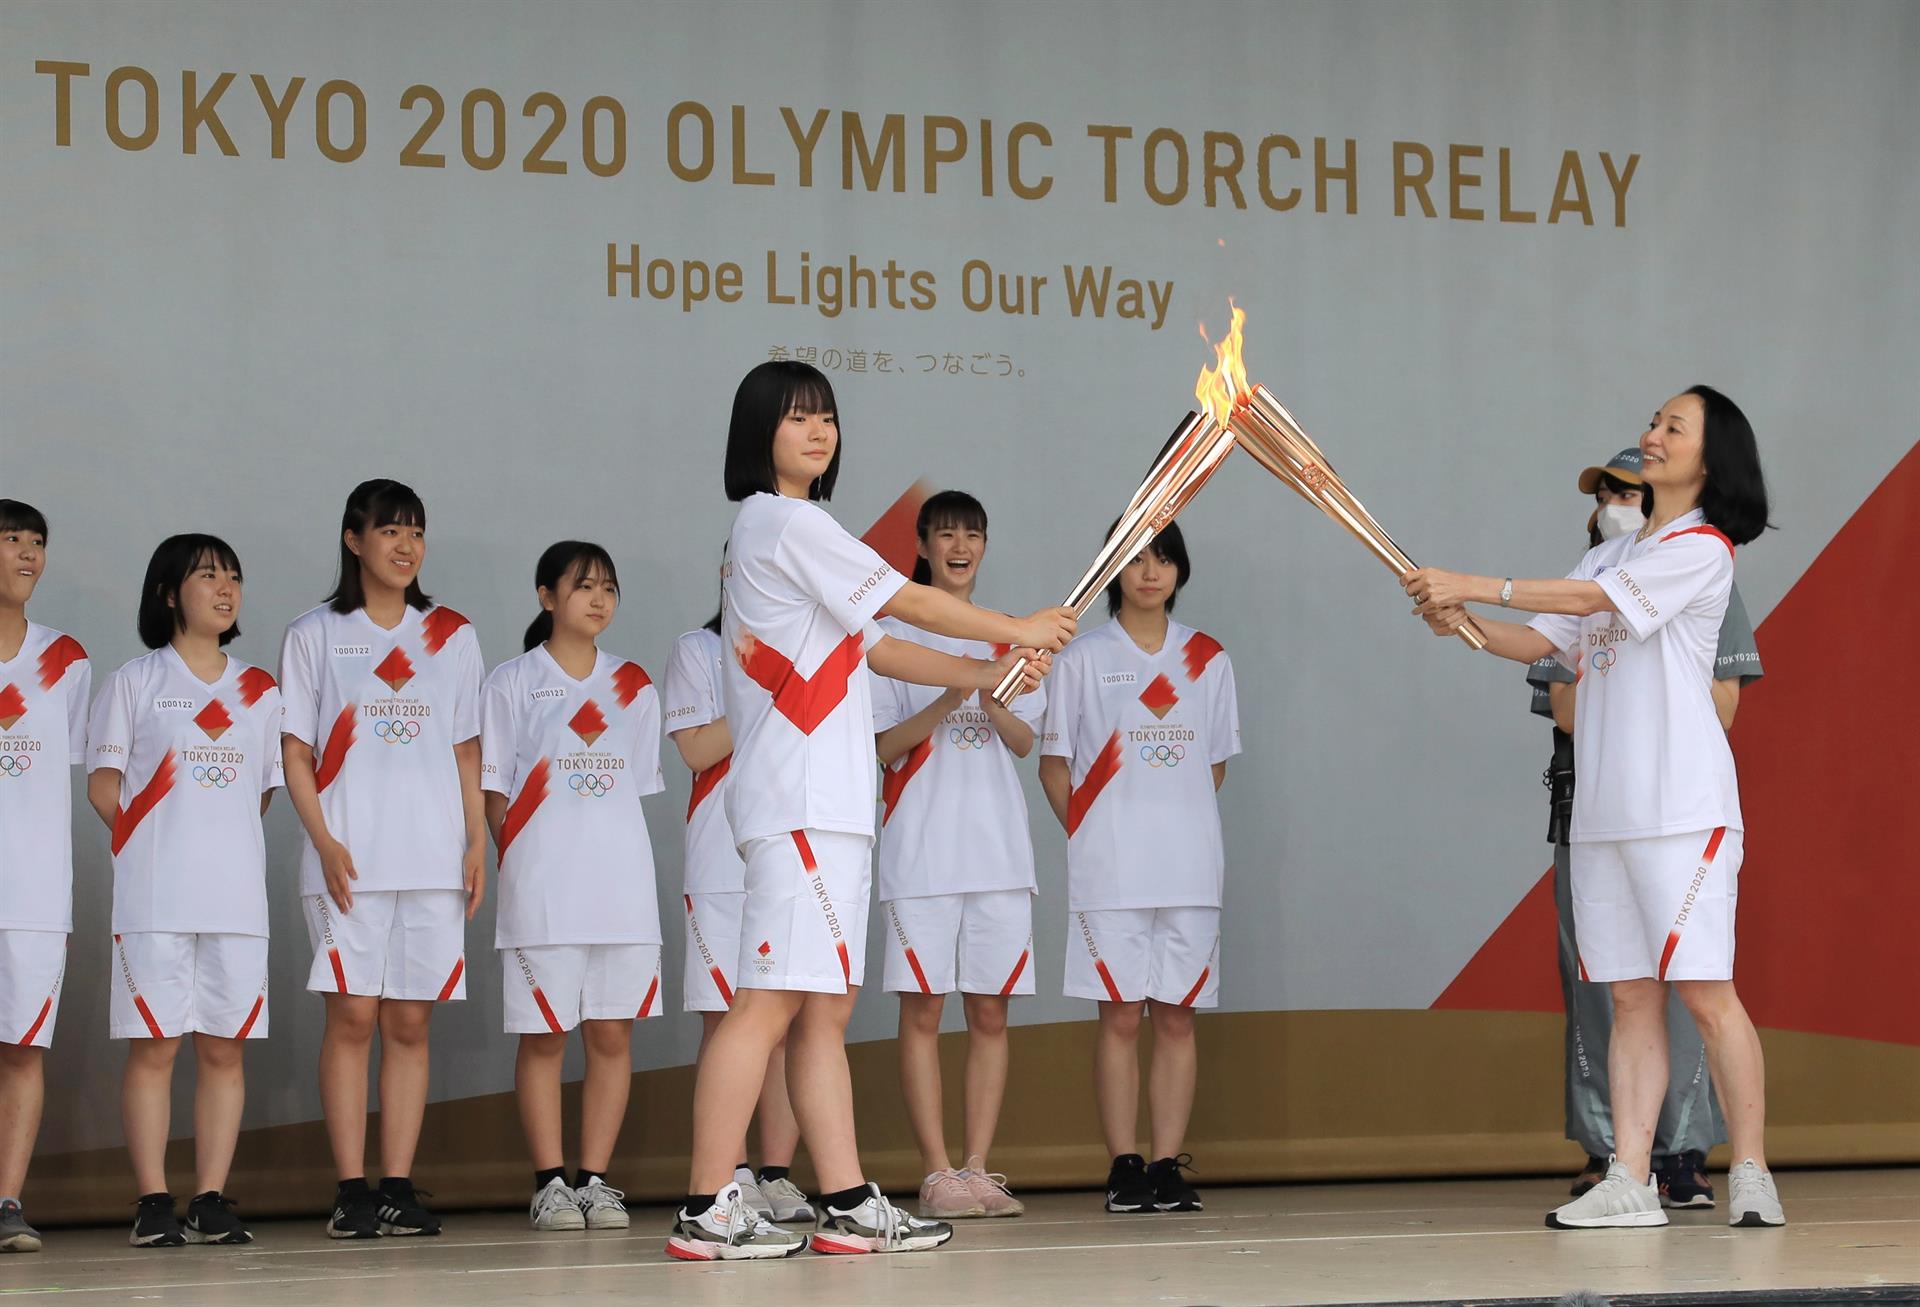 La antorcha olímpica inicia el relevo en Tokio a puerta cerrada por la Covid-19